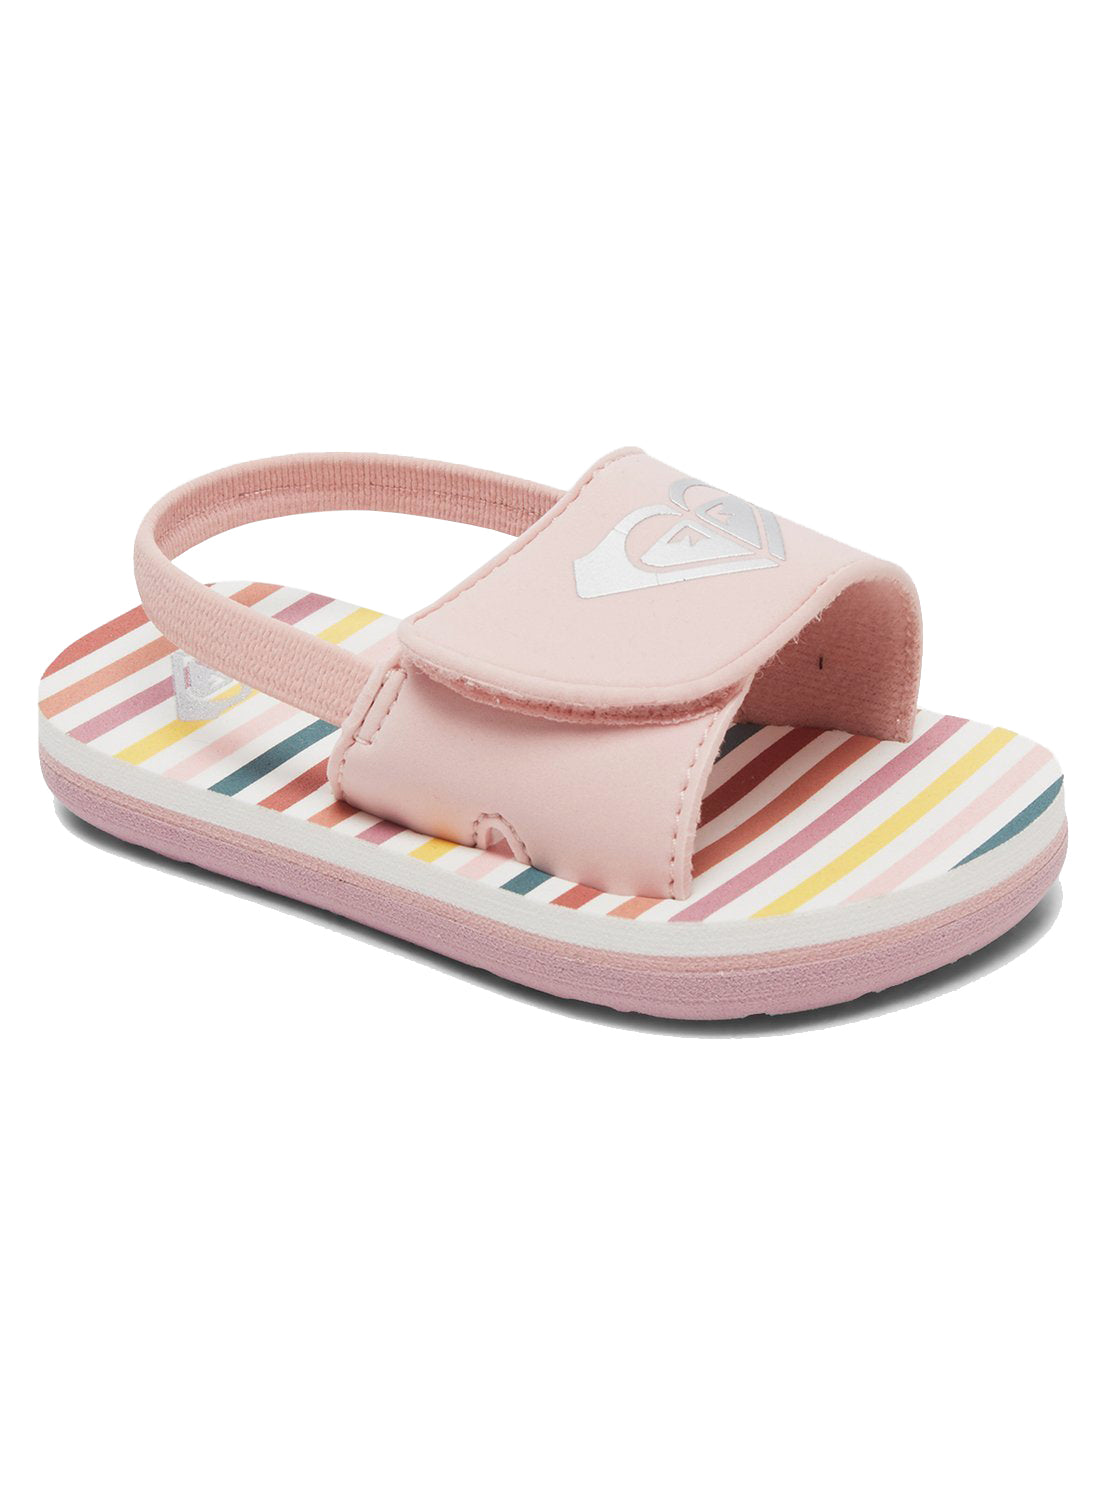 Roxy Finn Toddler Sandal PW0-Pink-White 7 C